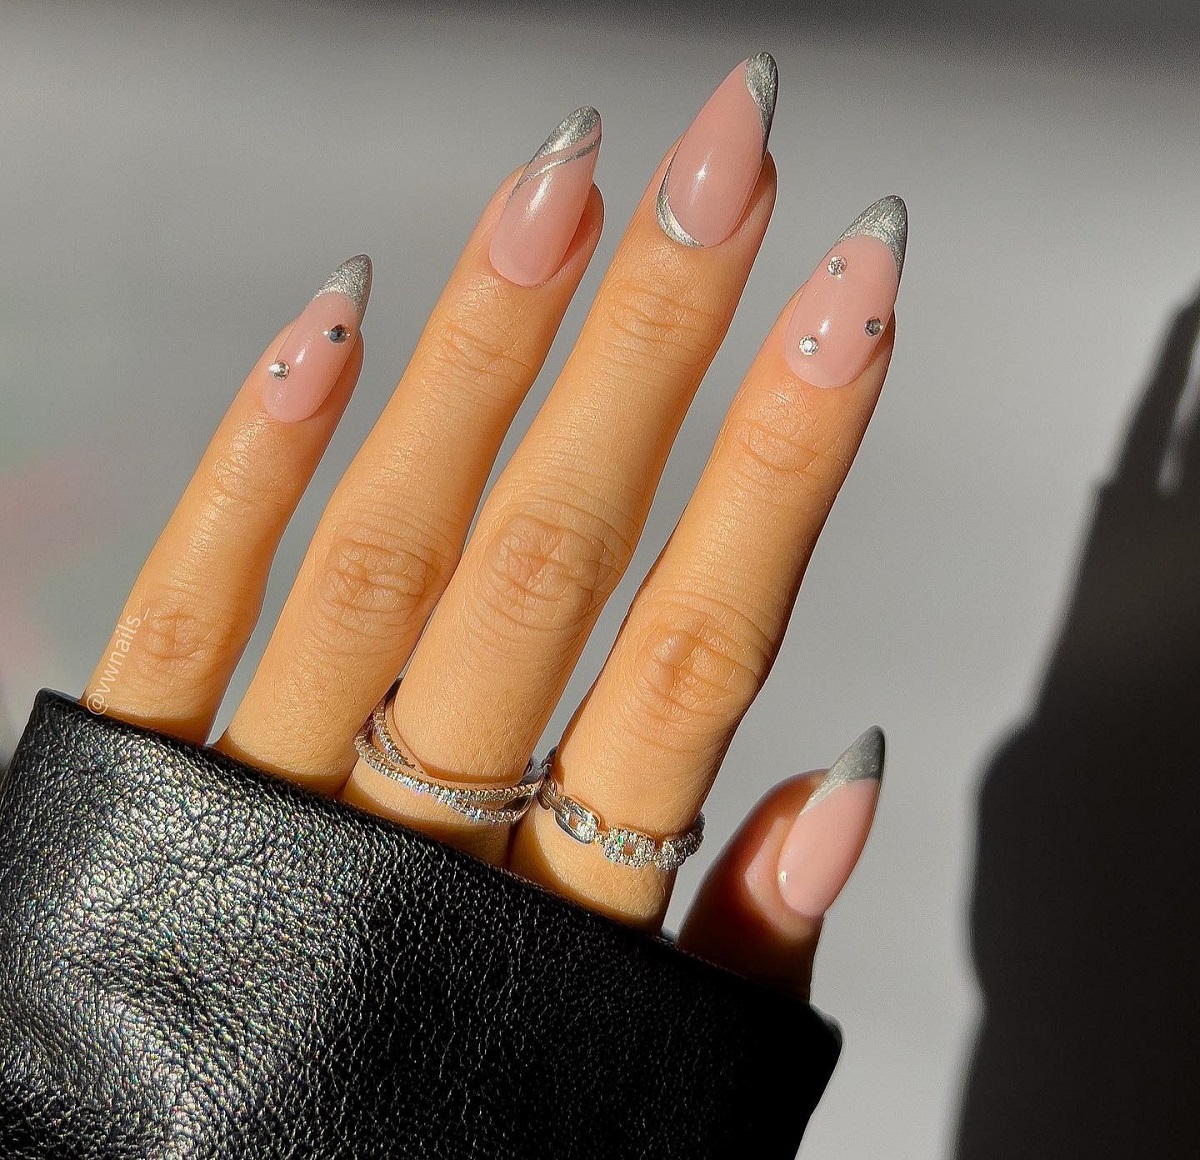 Reflective Silver nails